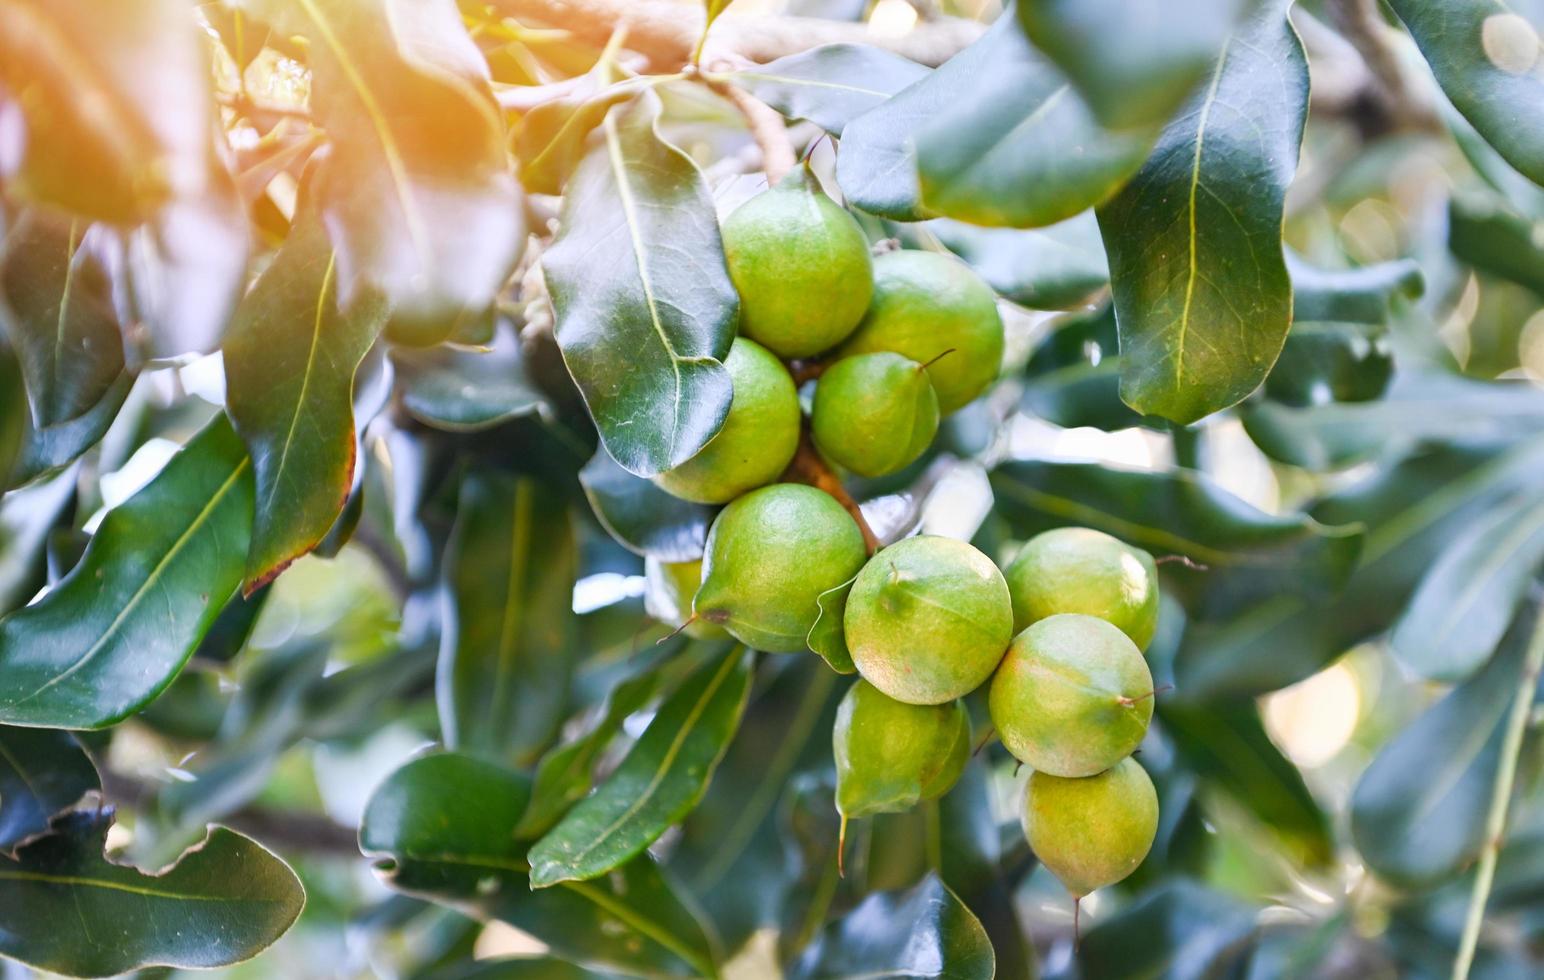 noix de macadamia sur la plante d'arbre de macadamia, noix de macadamia crues naturelles fraîches dans le jardin, plantation de fruits de noix de macadamia en attente de la récolte des graines photo